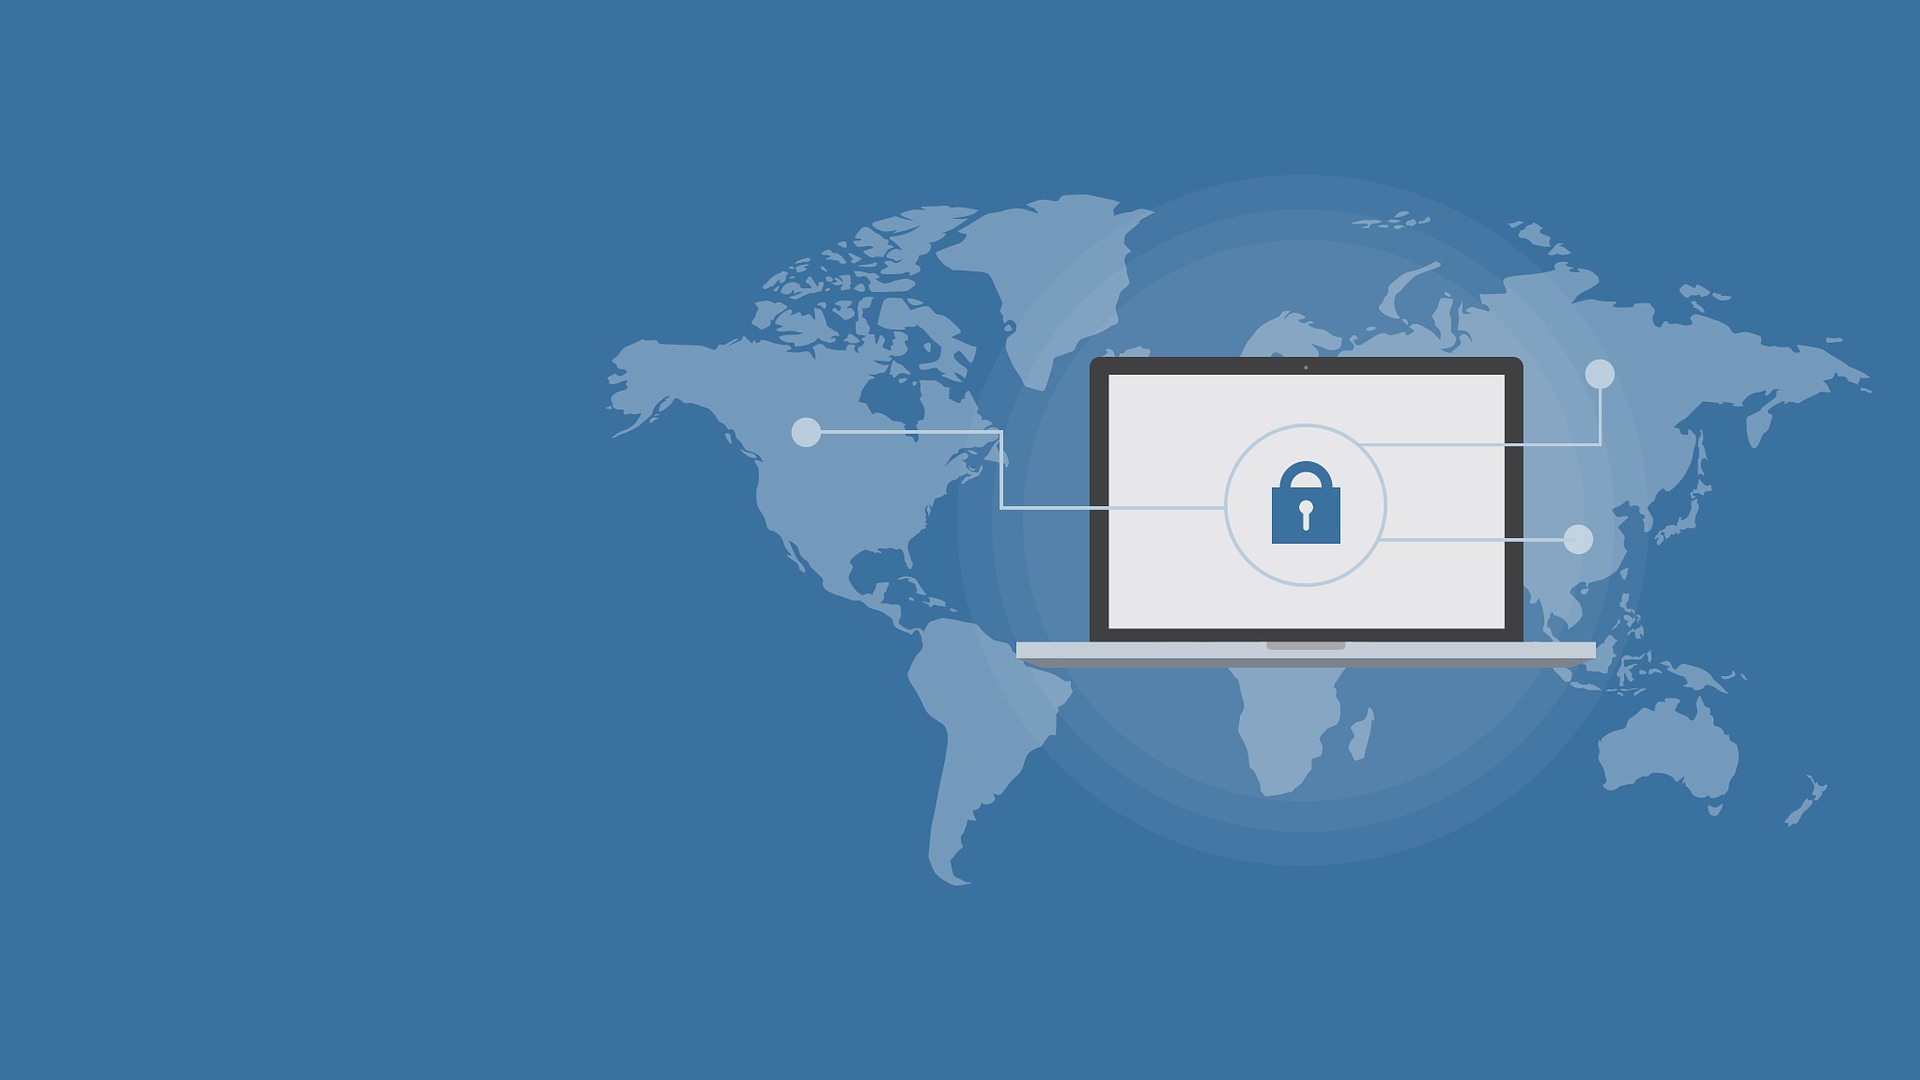 Working Secure Online – Cyber Hygiene